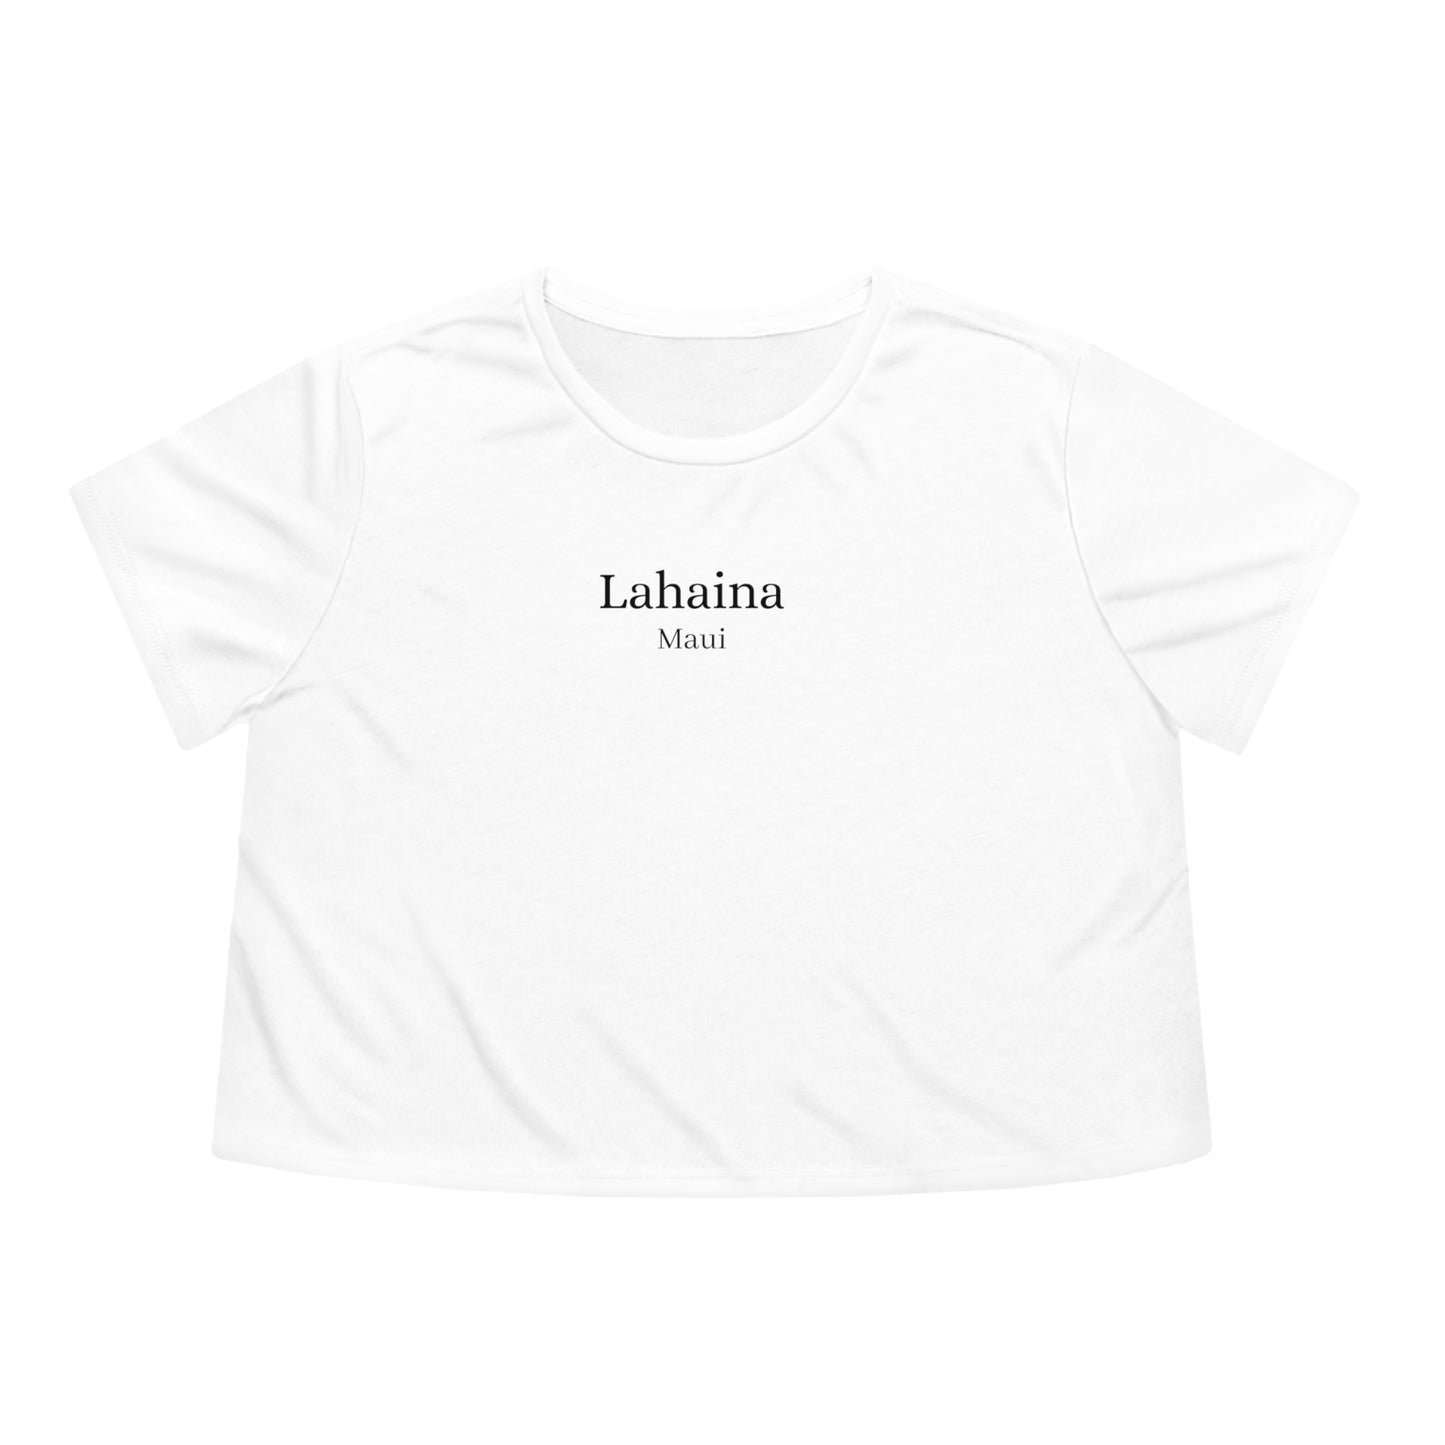 Lahaina, Maui Tshirt